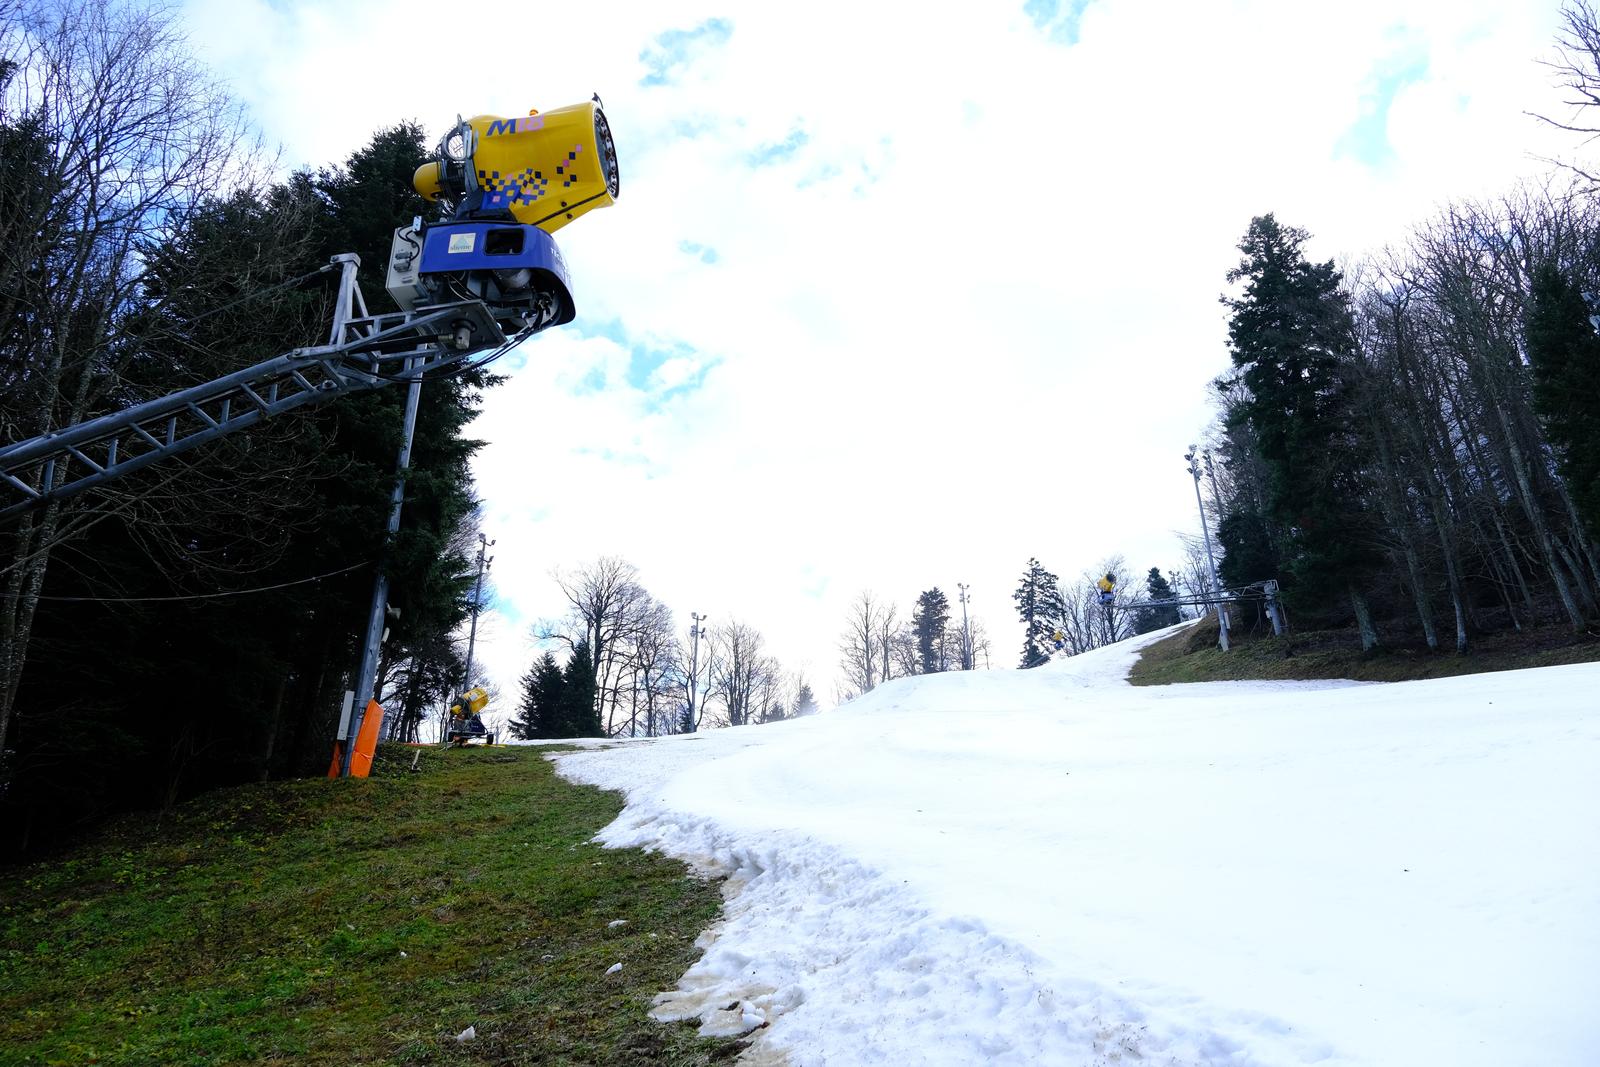 27.12.2022., Zagreb - Medunarodna skijaska federacija (FIS) nakon pregleda staze dala je zeleno svjetlo za odrzavanje zenskih slaloma 4. i 5. sijecnja. Photo: Slaven Branislav Babic/PIXSELL